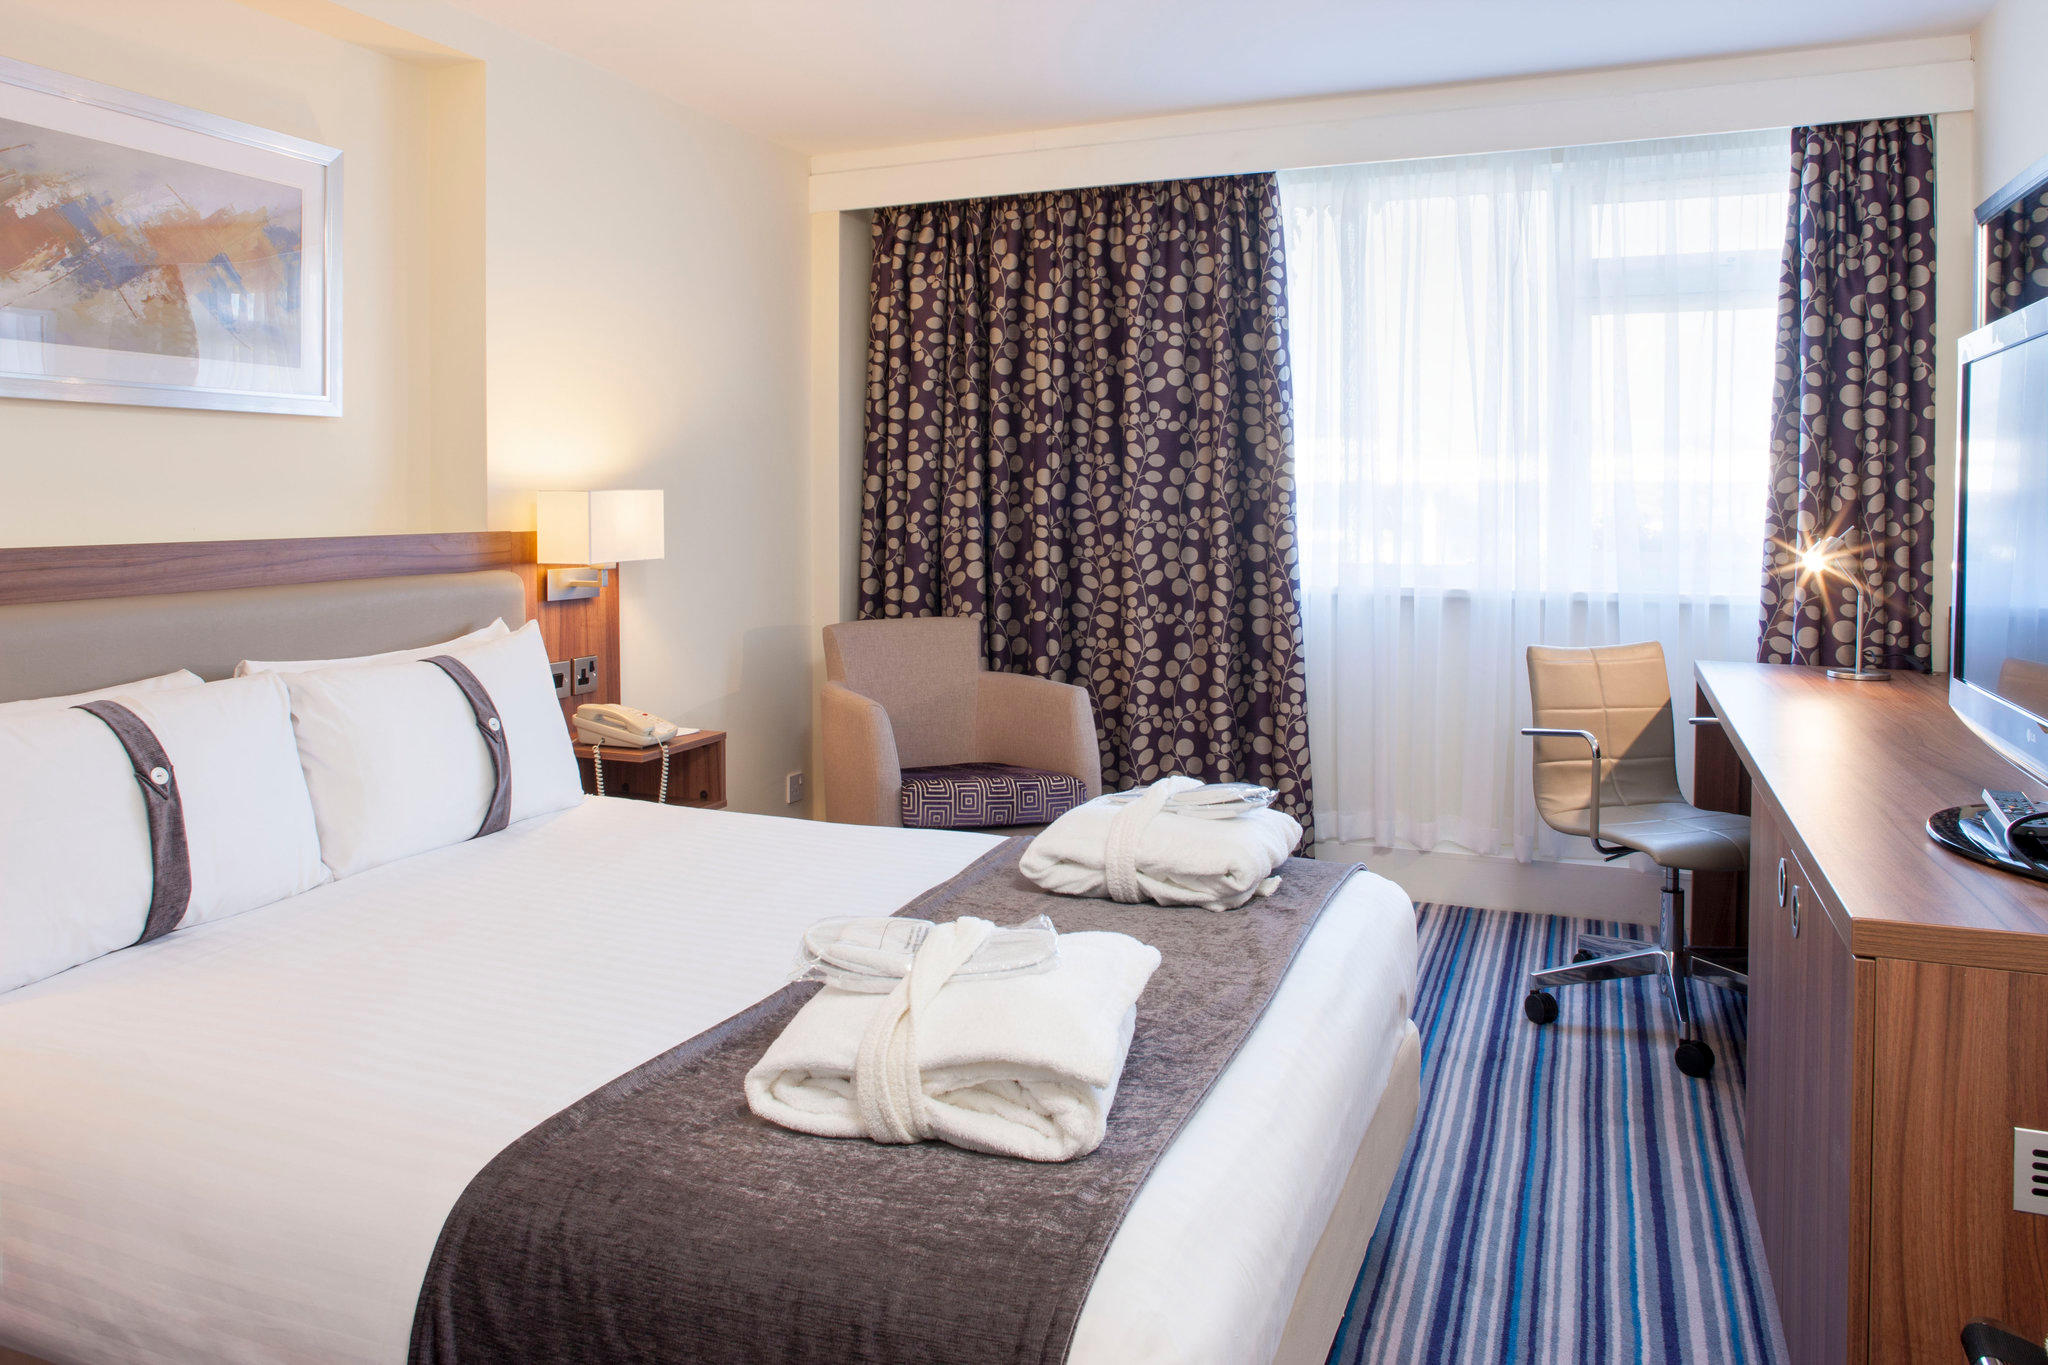 Holiday Inn Ashford - Central, an IHG Hotel Ashford 01233 619600